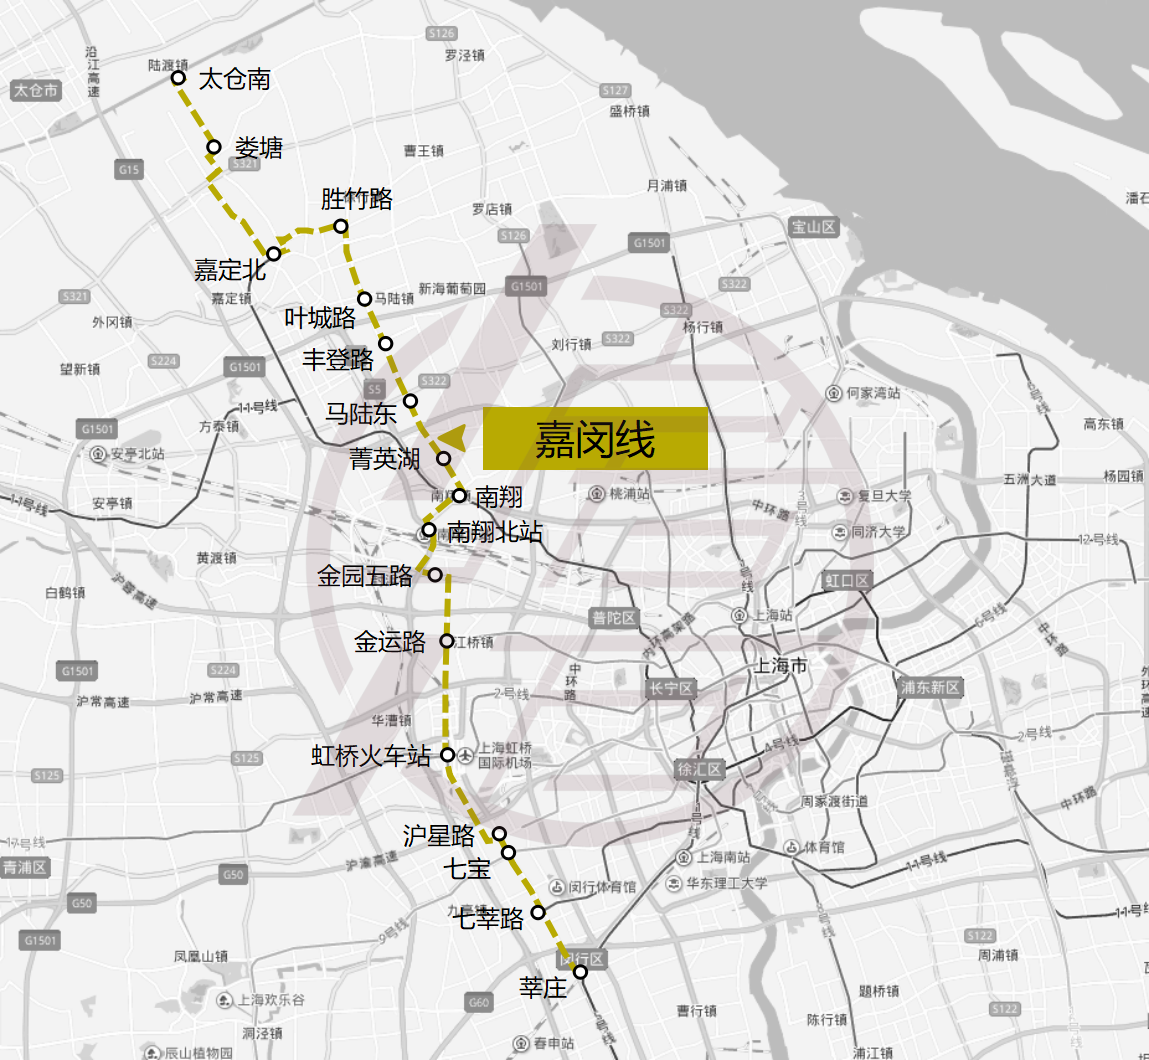 华漕镇地铁规划图片